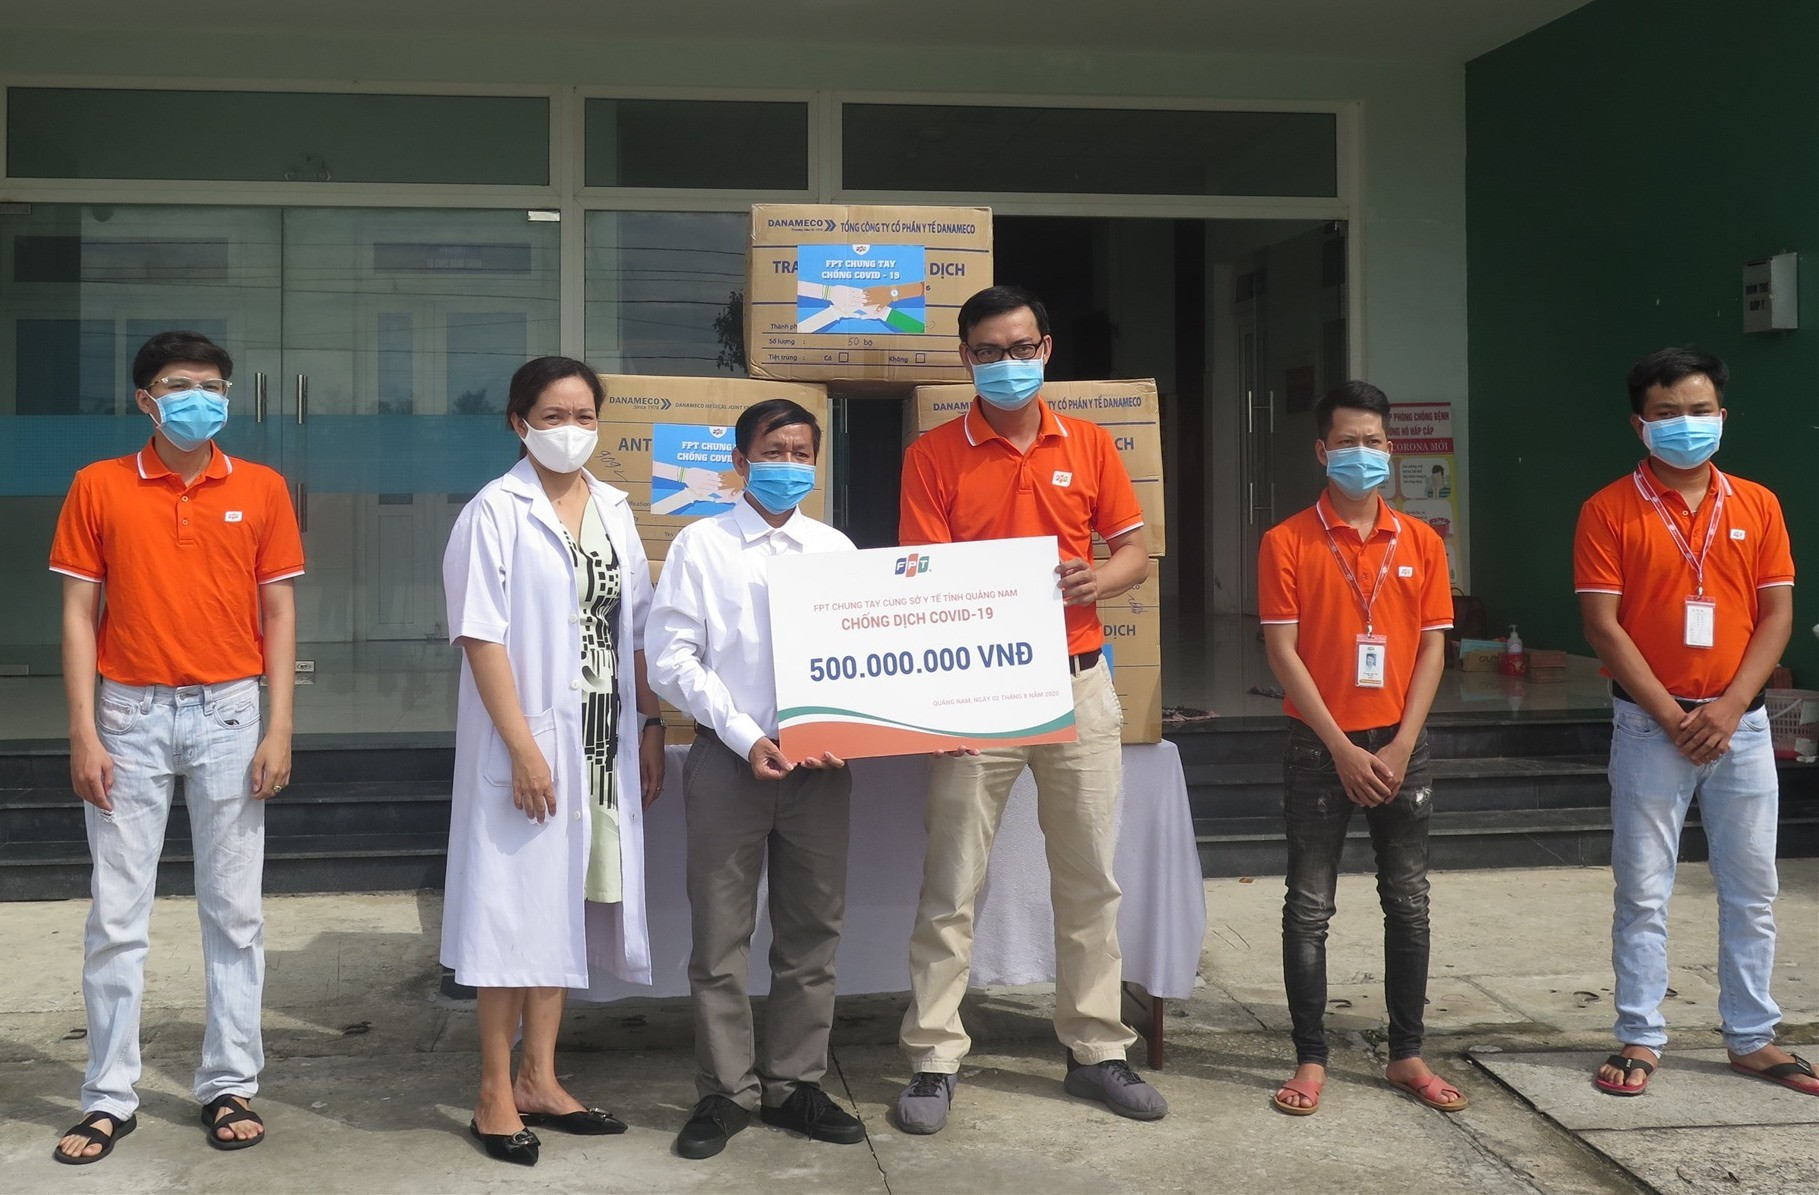 Đại diện FPT trao tặng dụng cụ bảo hộ đến đội ngũ nhân viên y tế Quảng Nam. Ảnh: X.H